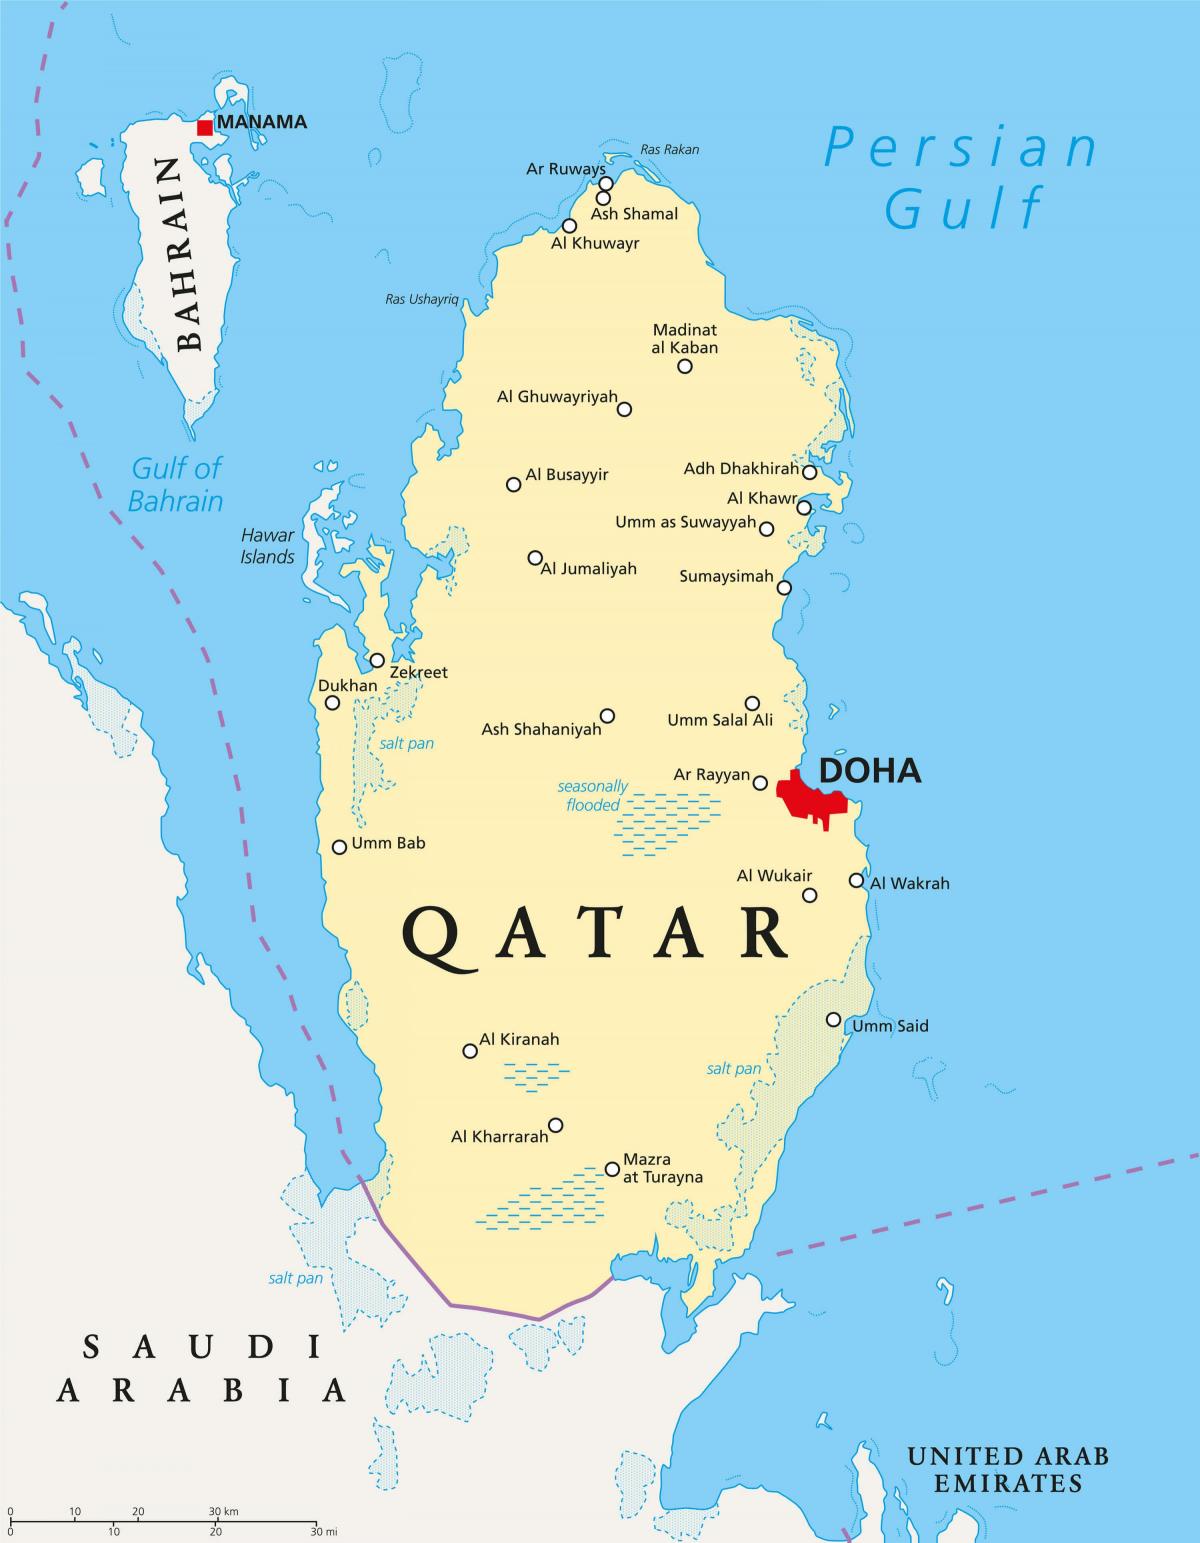 kataras žemėlapis, kuriame miestų